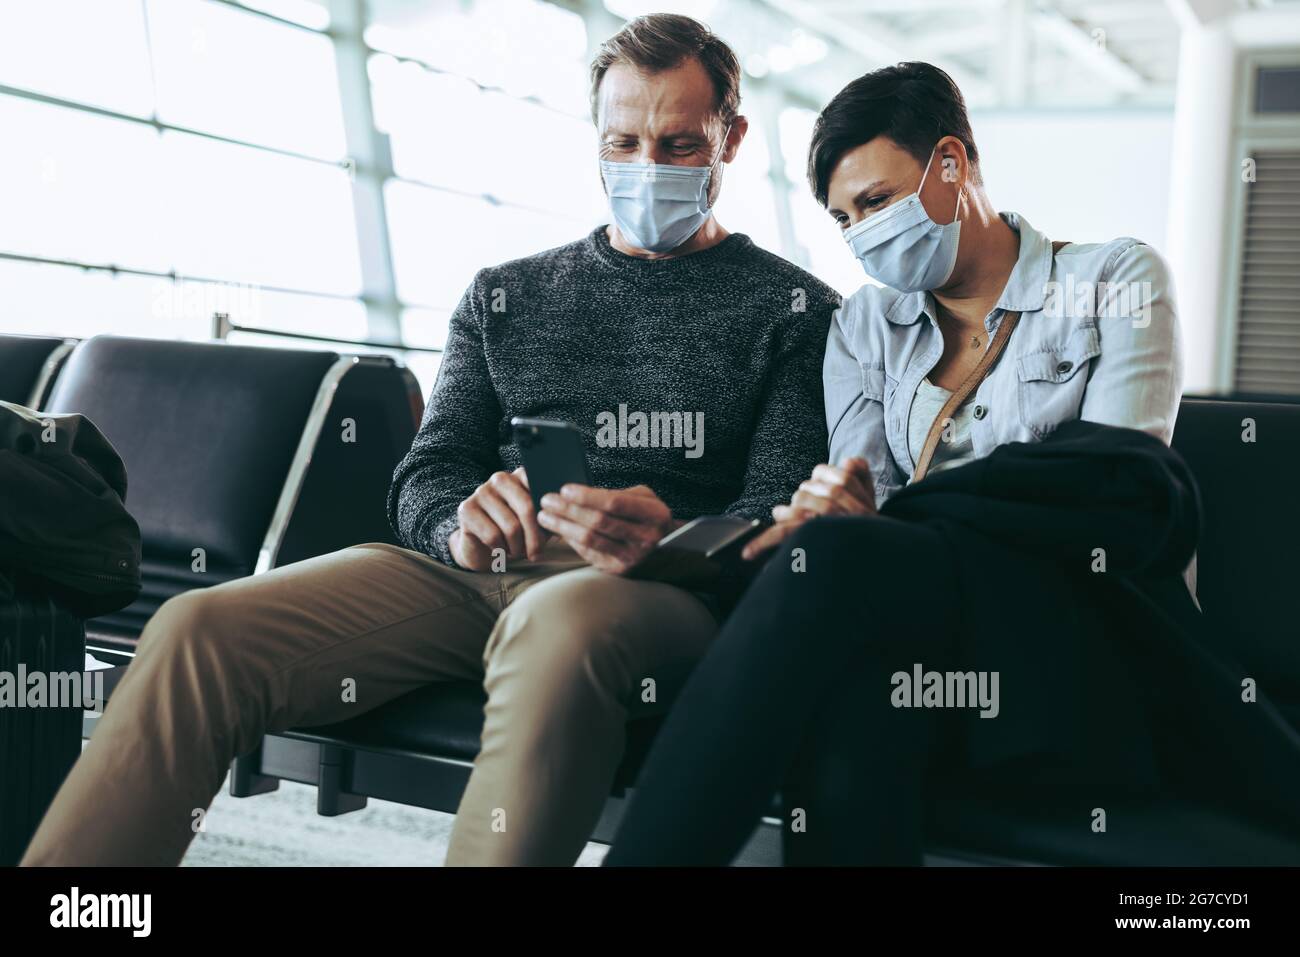 Mann zeigt der Frau am Flughafen sein Handy. Setzen Sie sich mit dem Telefon in Gesichtsmasken, während Sie auf ihren Flug warten. Stockfoto